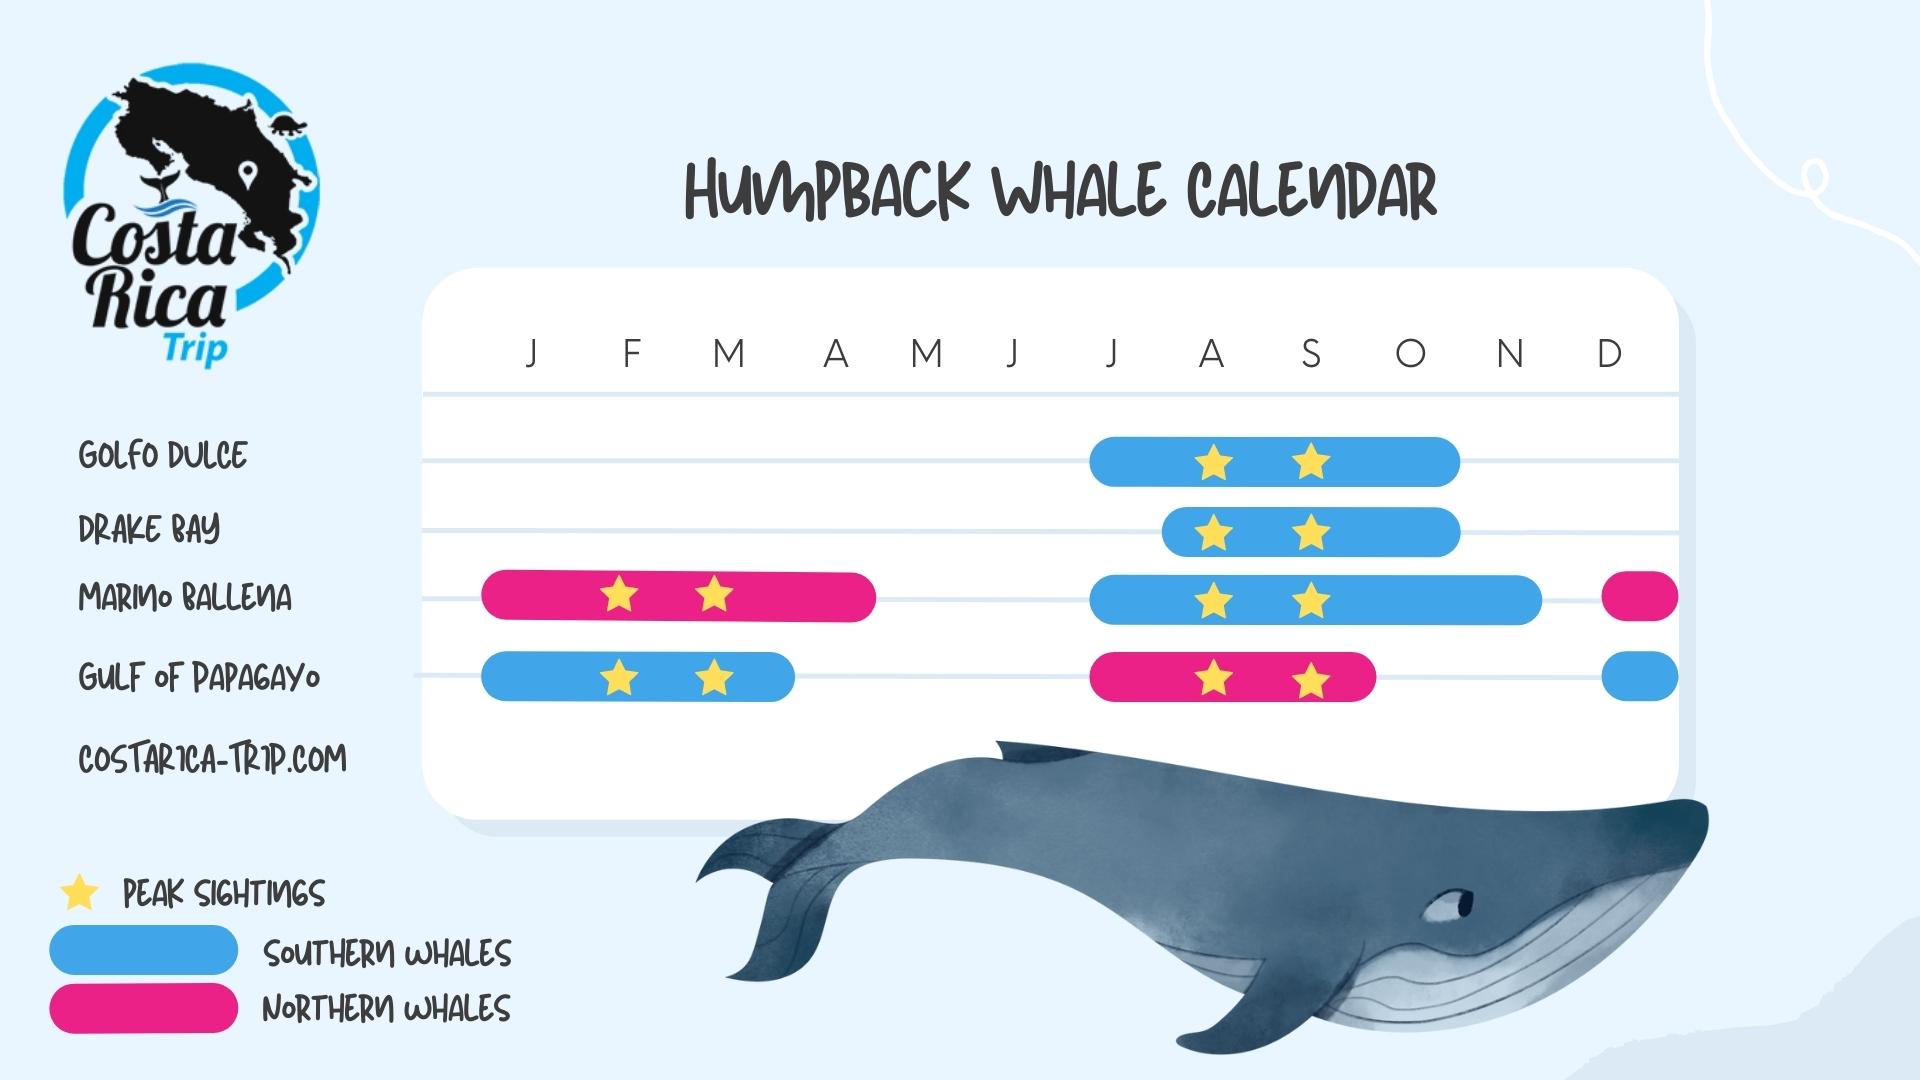 Costa Rica Humpback Whales Calendar